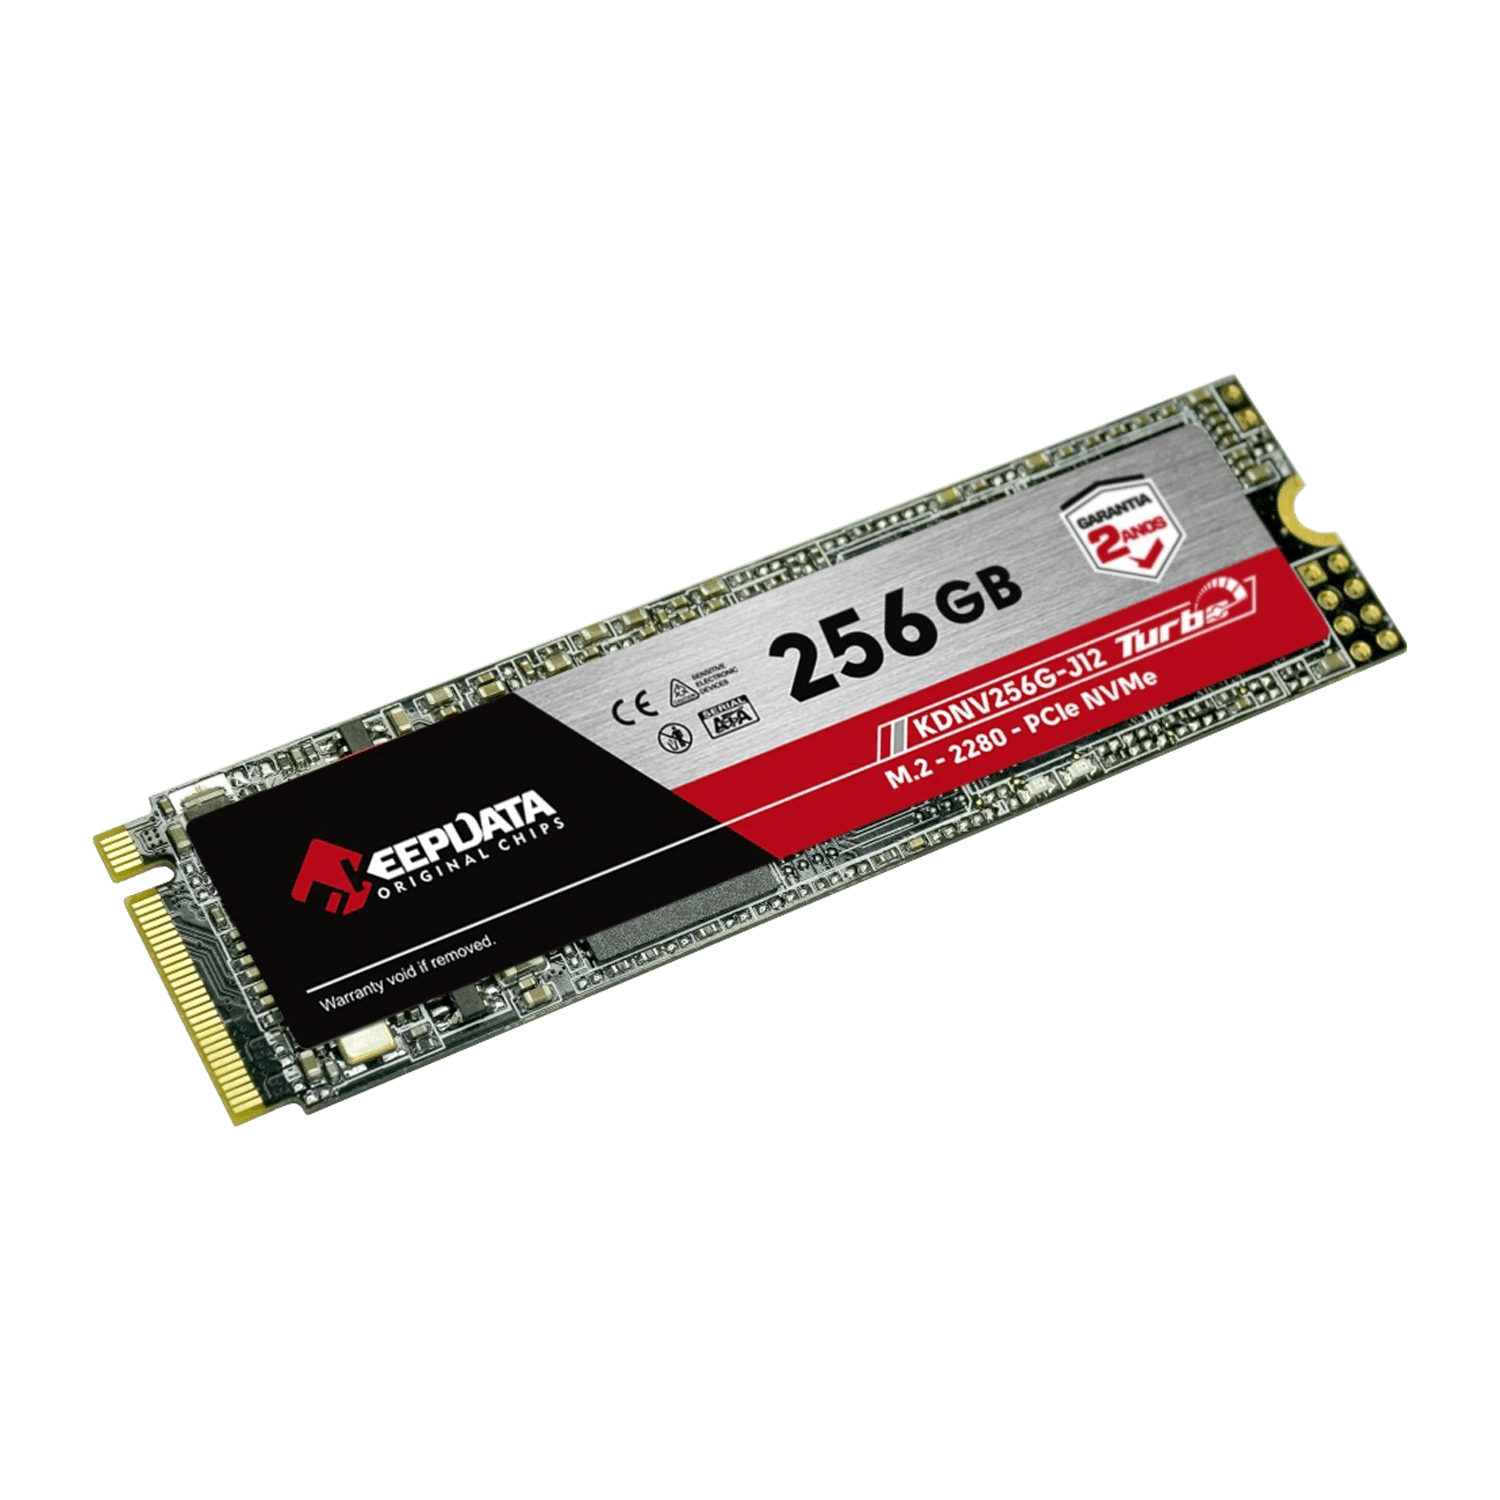 SSD M.2 Keepdata Turbo 256GB / 2280 / SATA 3 - (KDNV256G-J12)